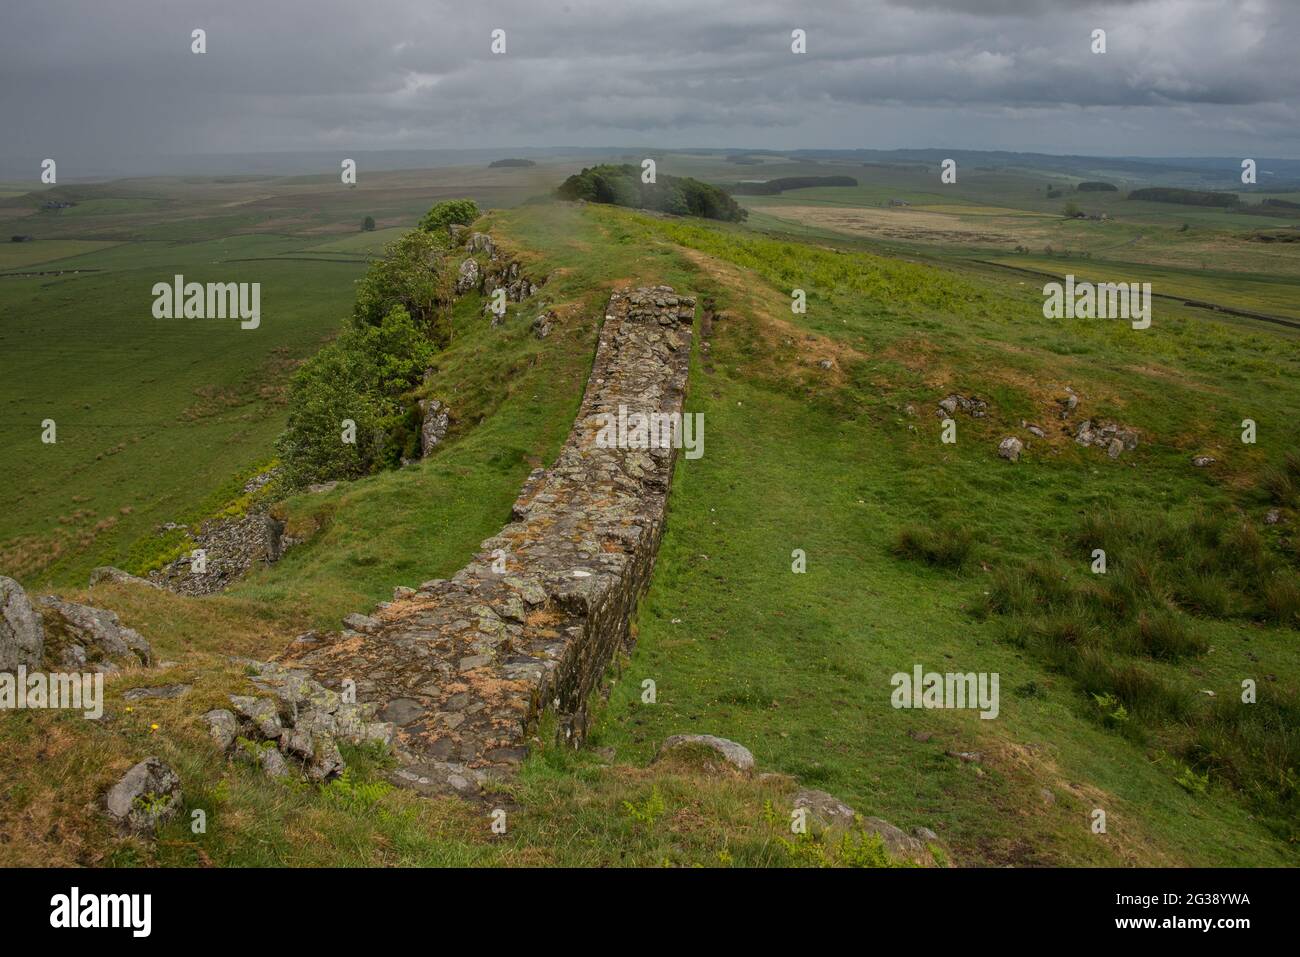 Vestiges d'un segment du mur d'Hadrien, l'ancien mur frontalier romain traversant le nord de l'Angleterre, sur les falaises de Sewingshields Crags près de Milecastle 35 à l'est du fort romain Housesteads. Longeant l'ensemble du site classé au patrimoine mondial de l'UNESCO, le chemin du mur d'Hadrien est l'un des sentiers de randonnée les plus populaires d'Angleterre. Banque D'Images